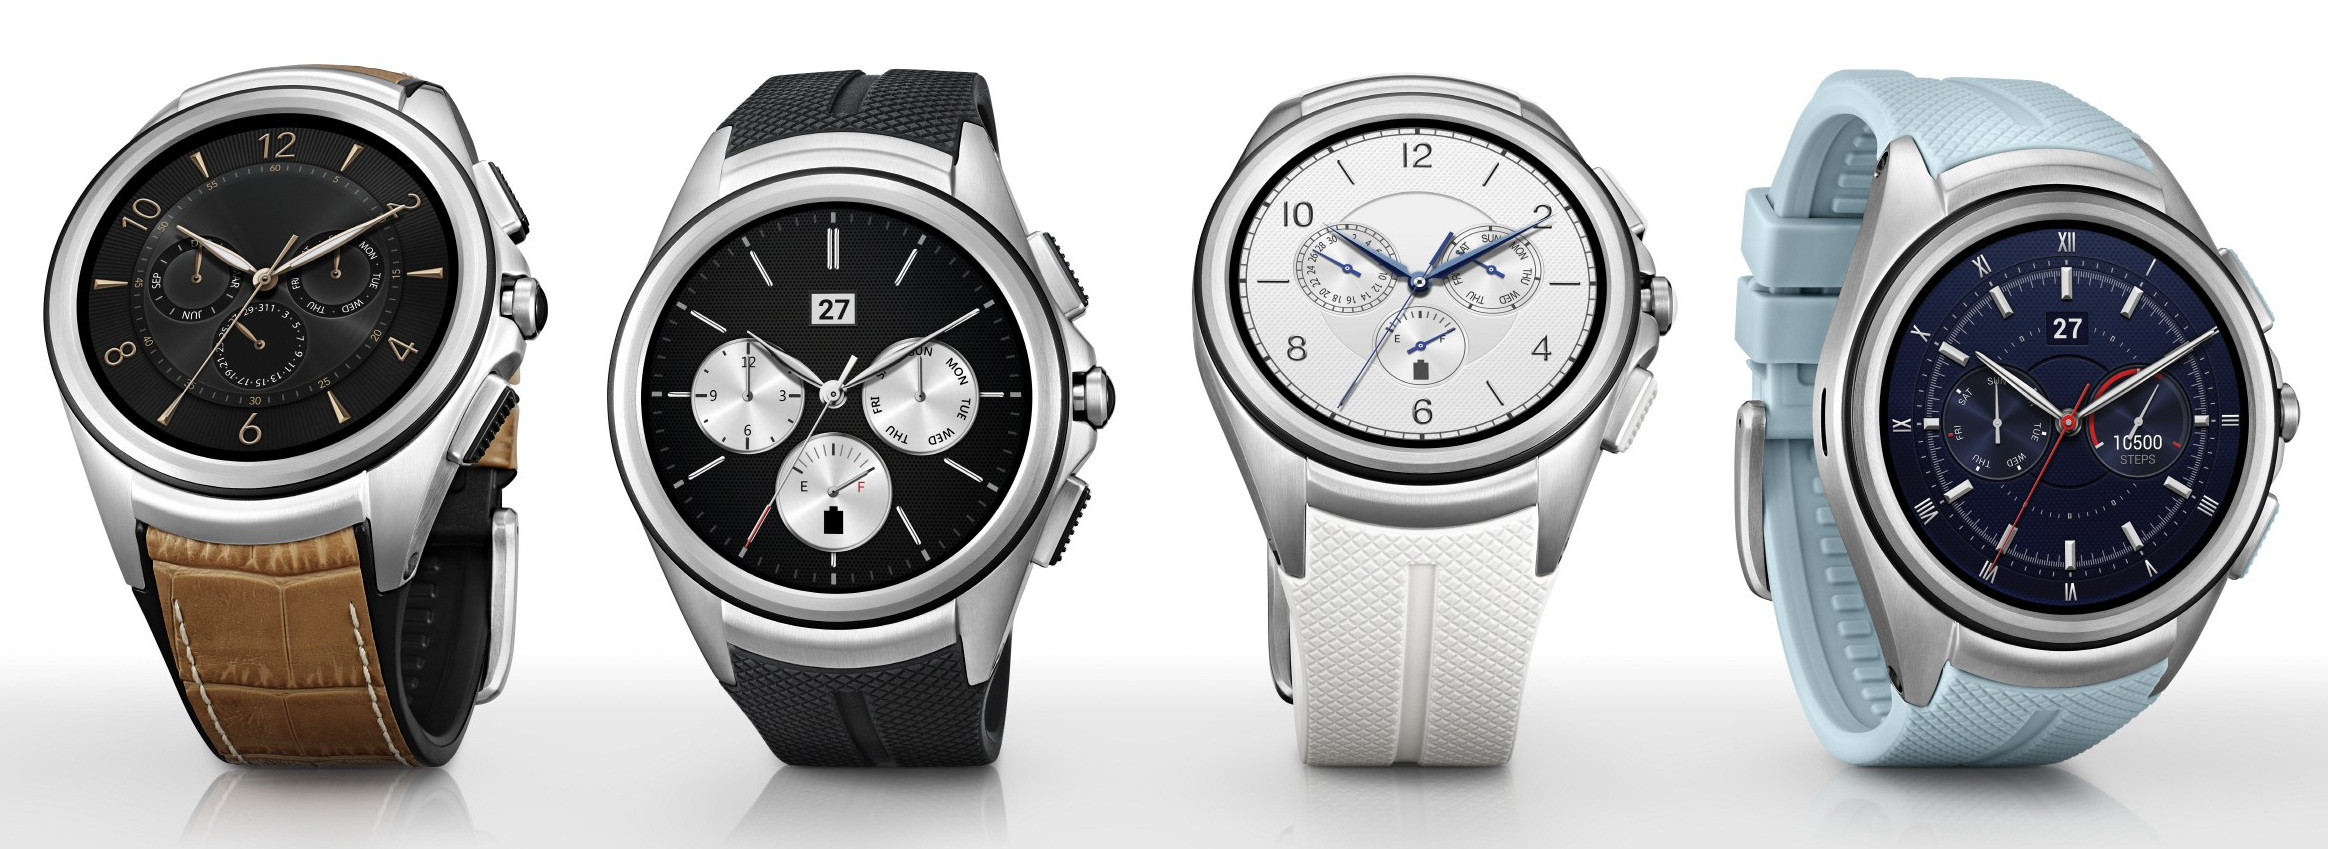 Смарт-часы LG Watch Urbane 2nd Edition умеют звонить